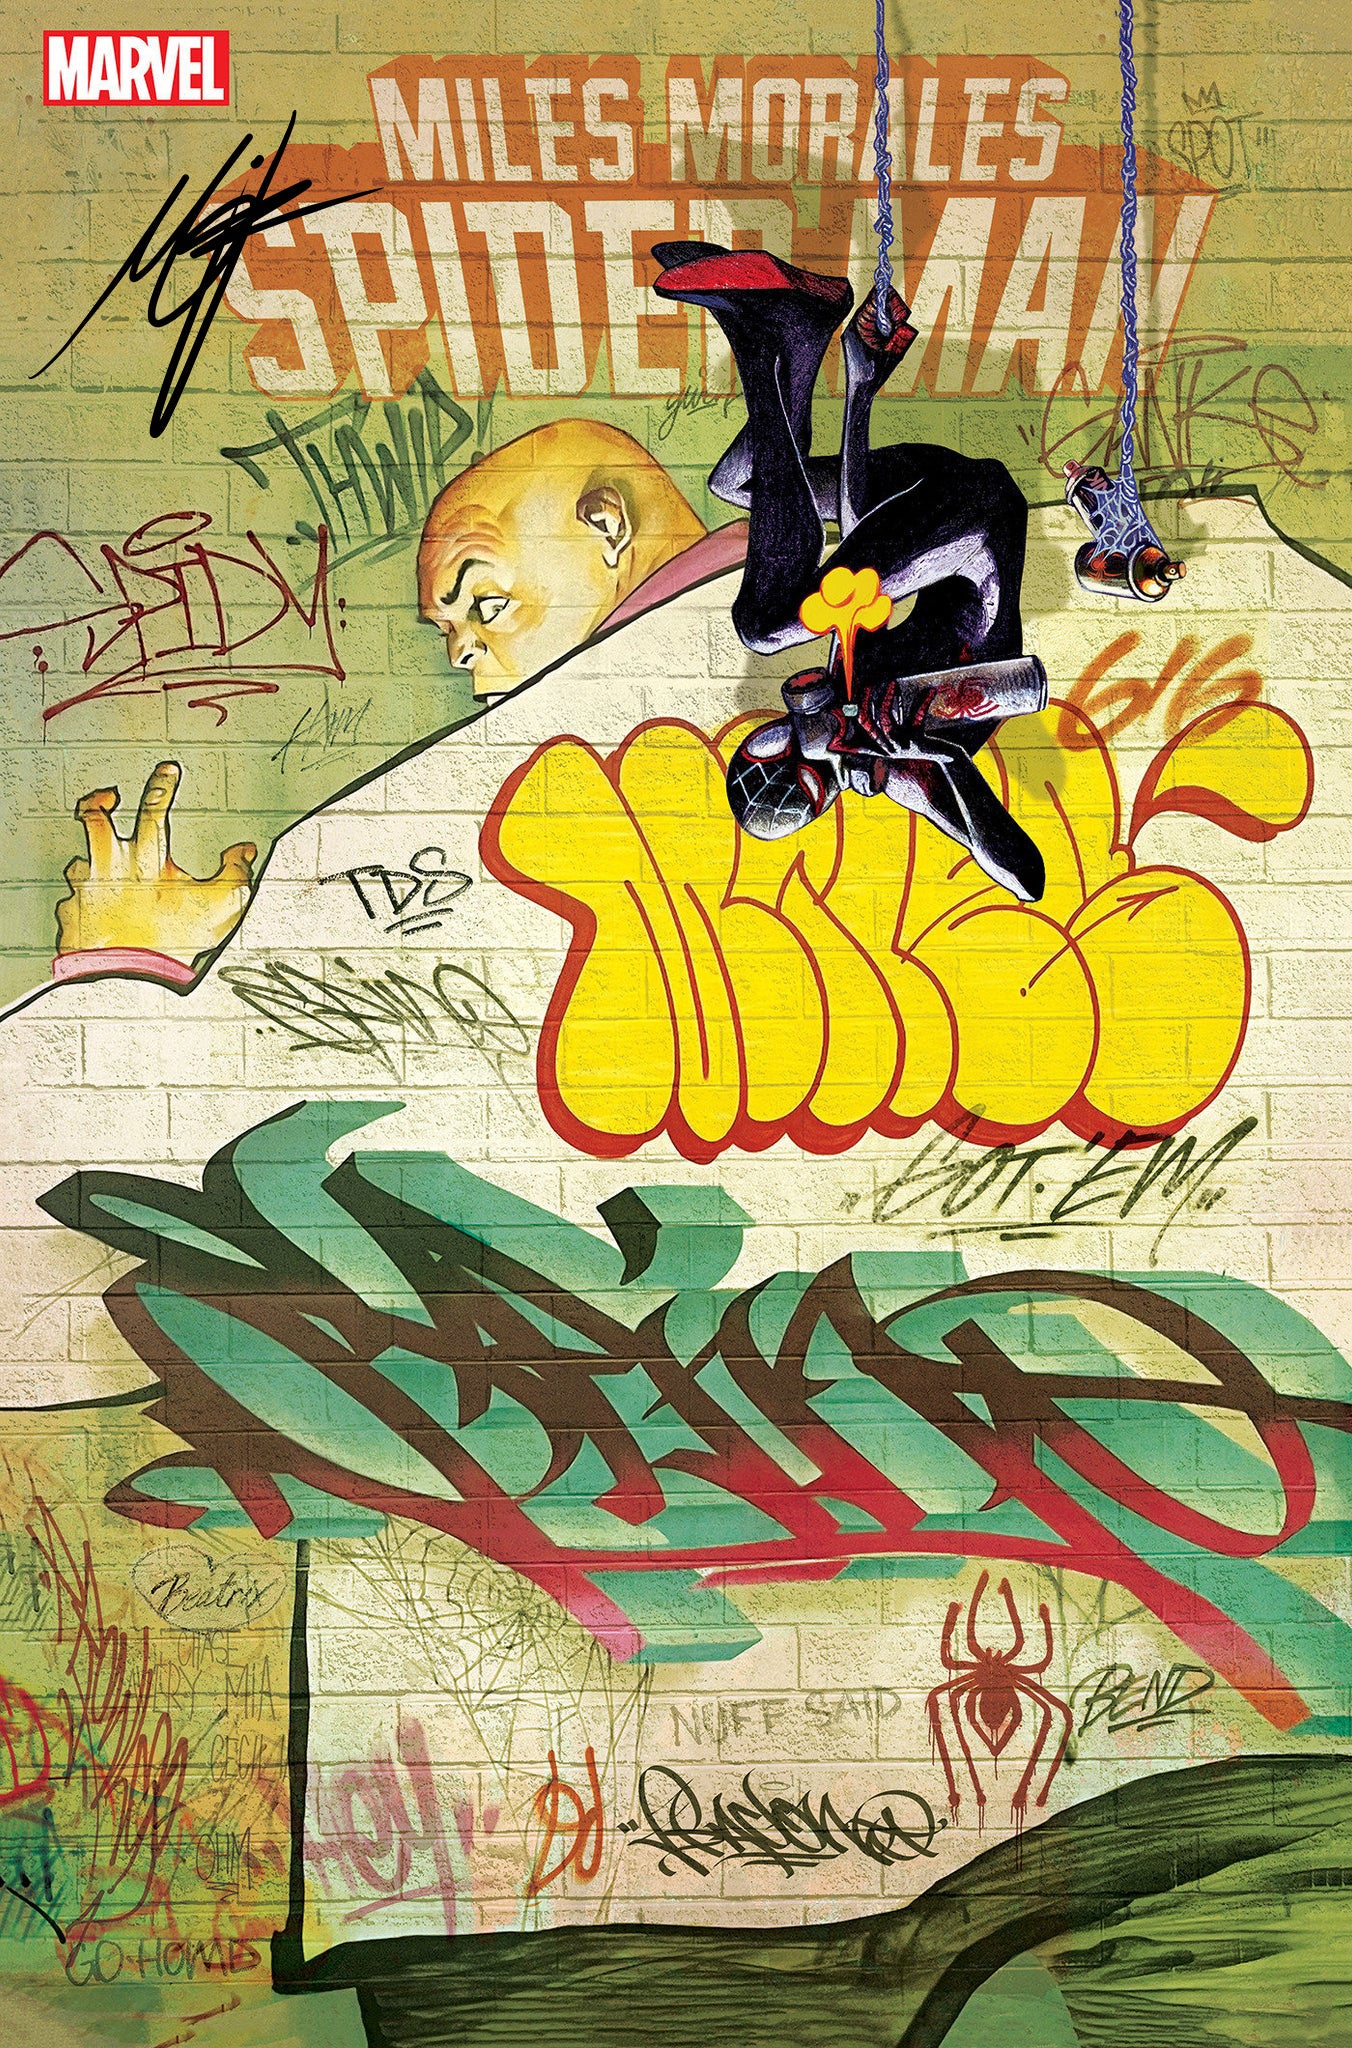 Miles Morales: Spider-Man #1 Del Mundo Graffiti Variant SIGNED